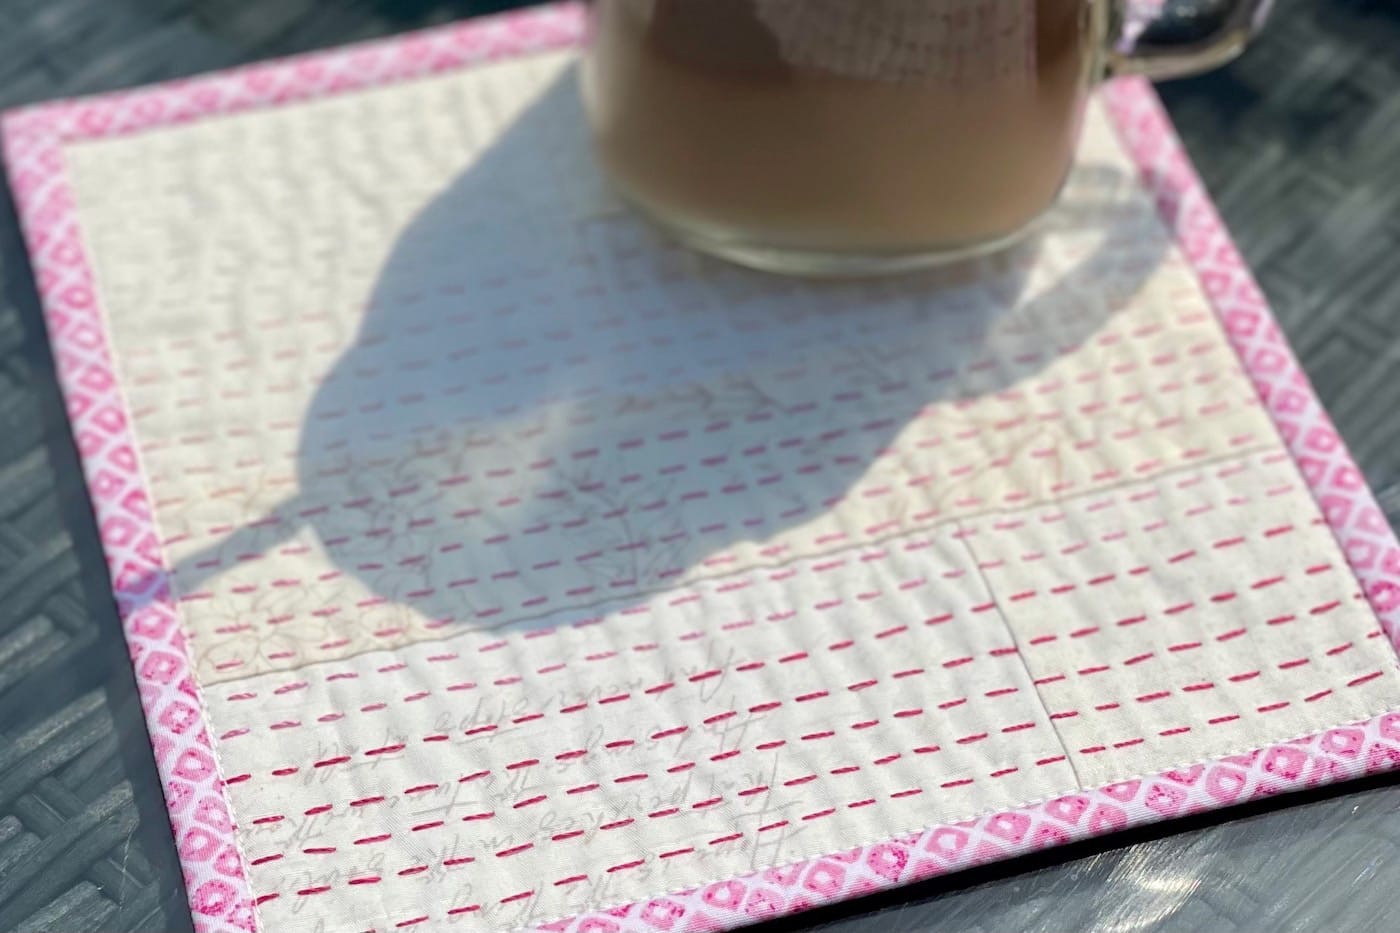 iced coffee on cream and pink mug rug